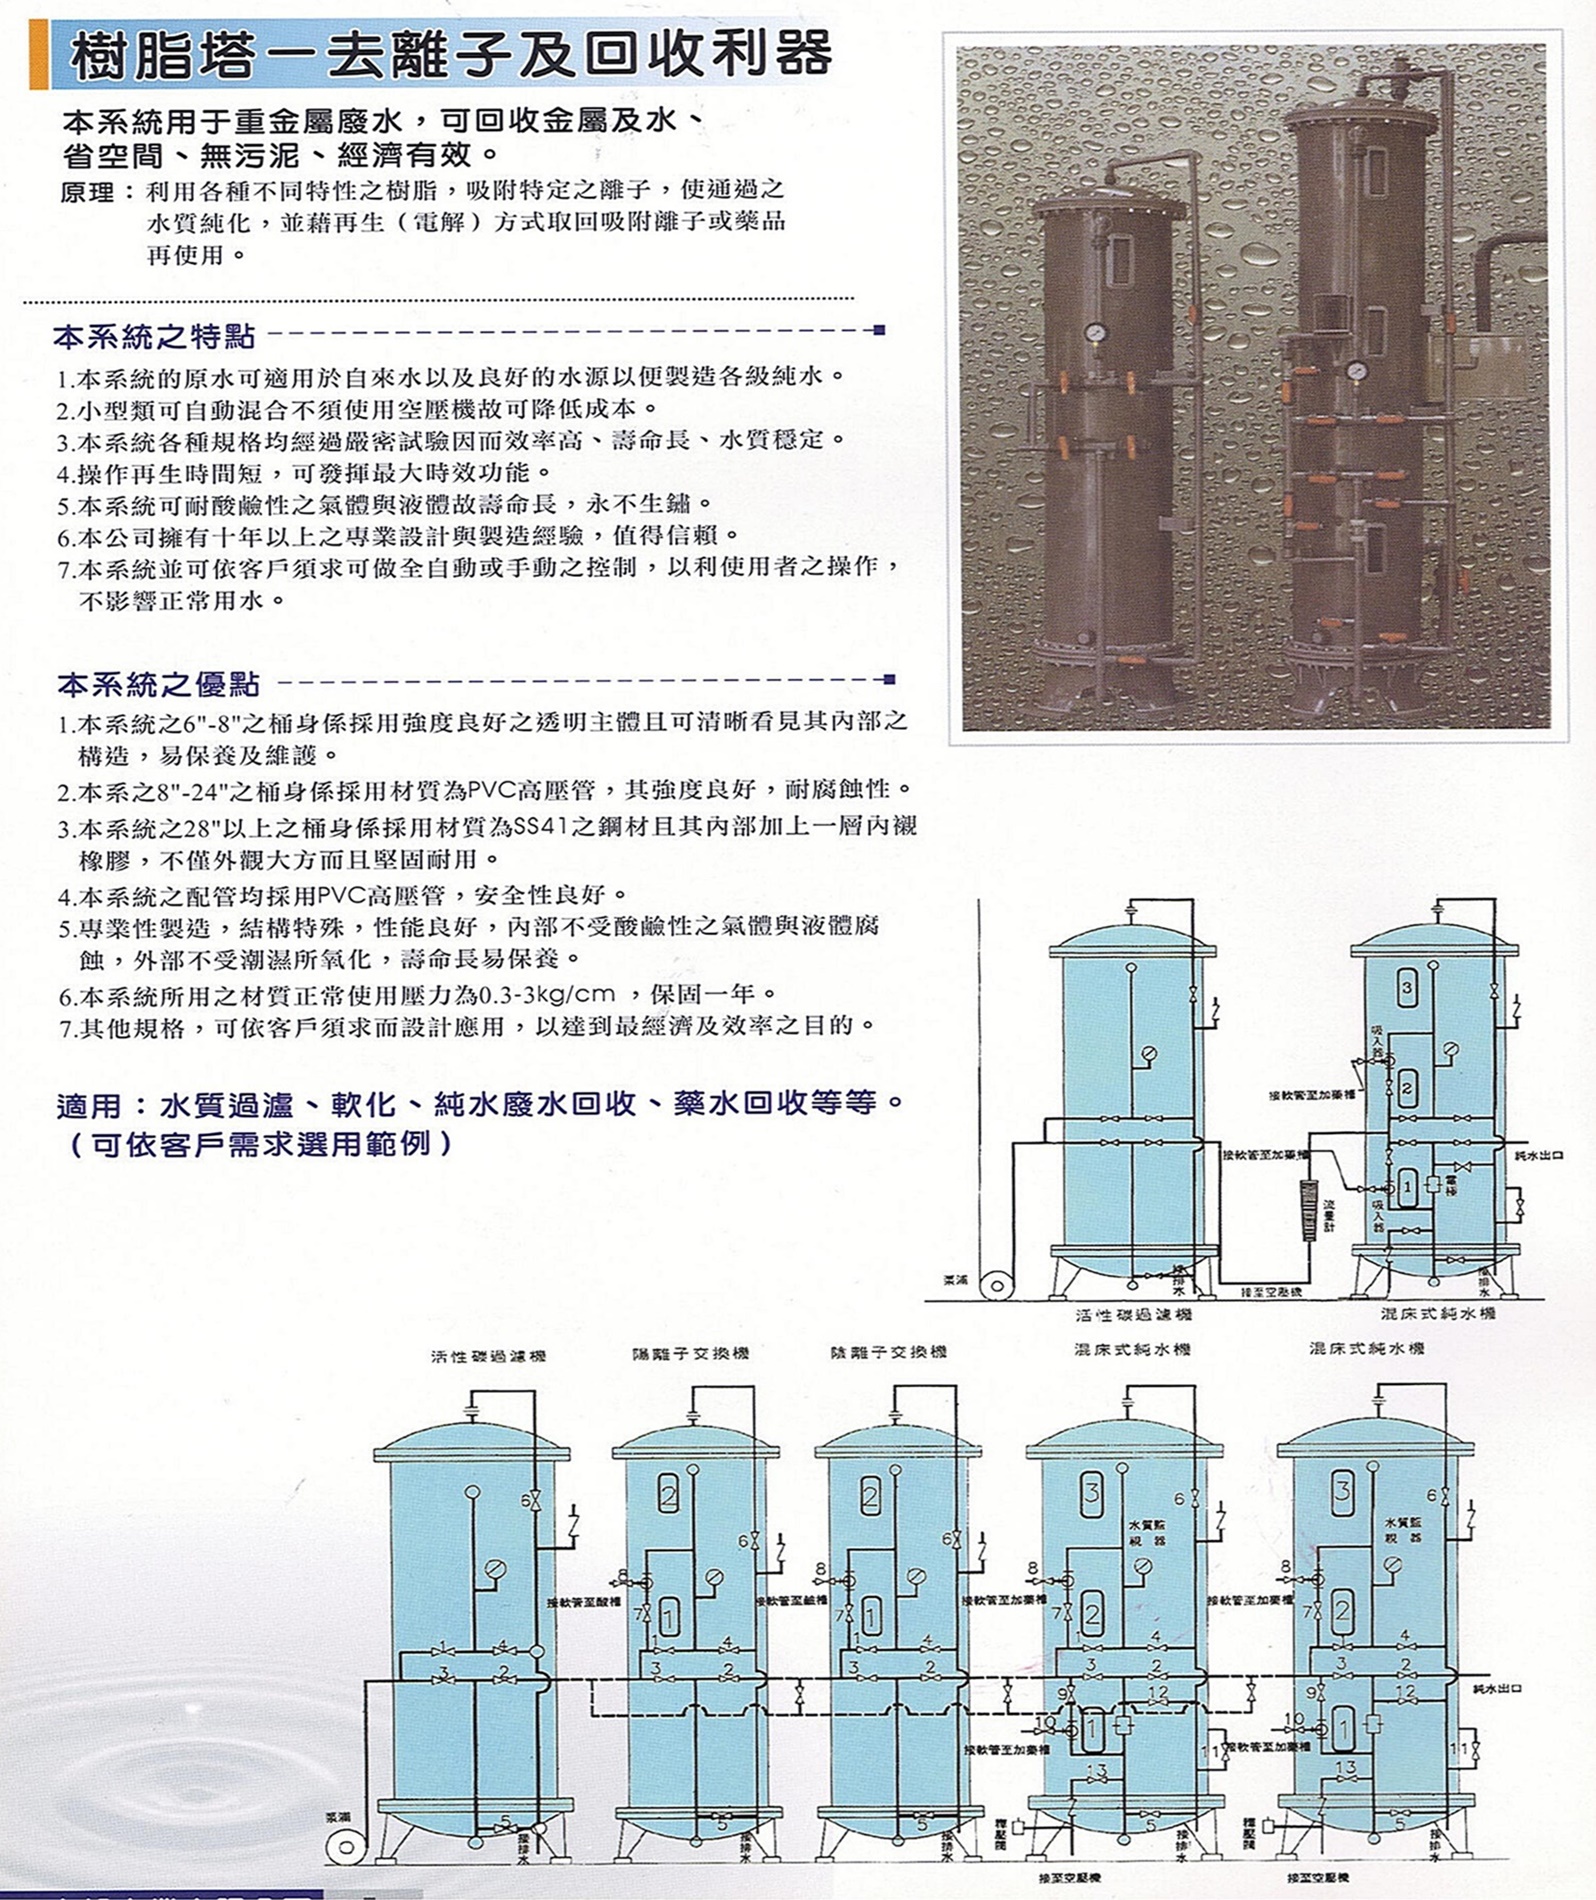 樹脂塔~去離子及回收利器:本系統用於重金廢水，可回收金屬及水、省空間、無污泥、經濟有效。